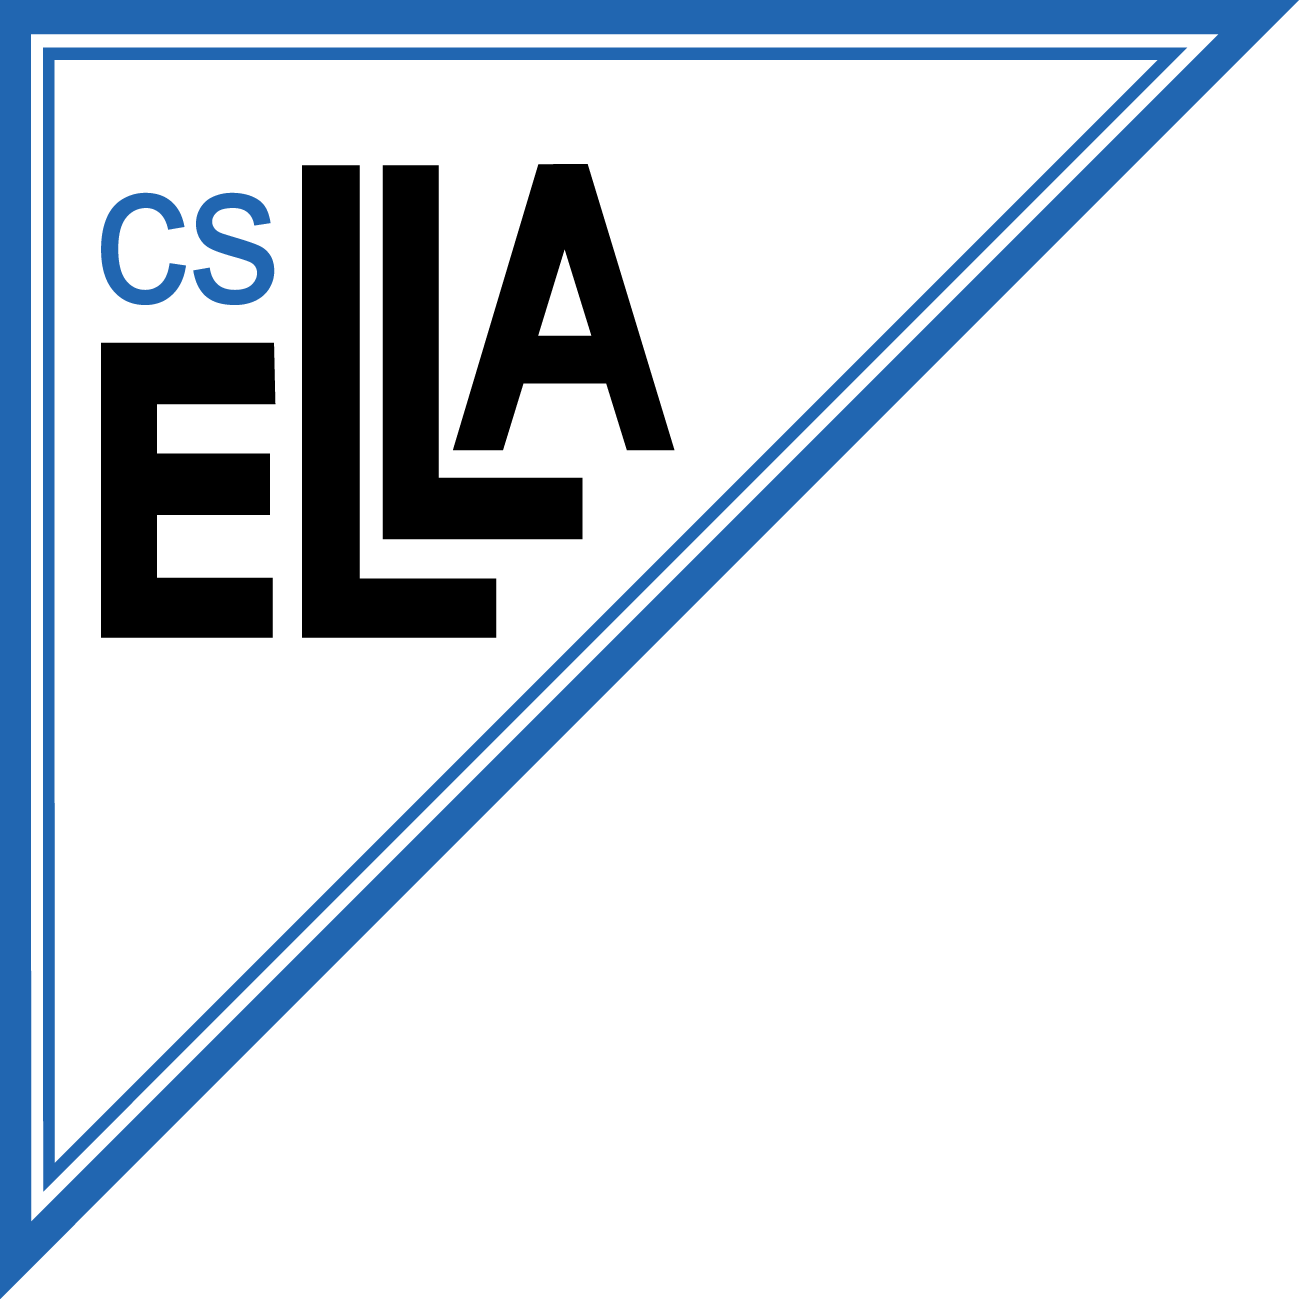 ELLA_CS